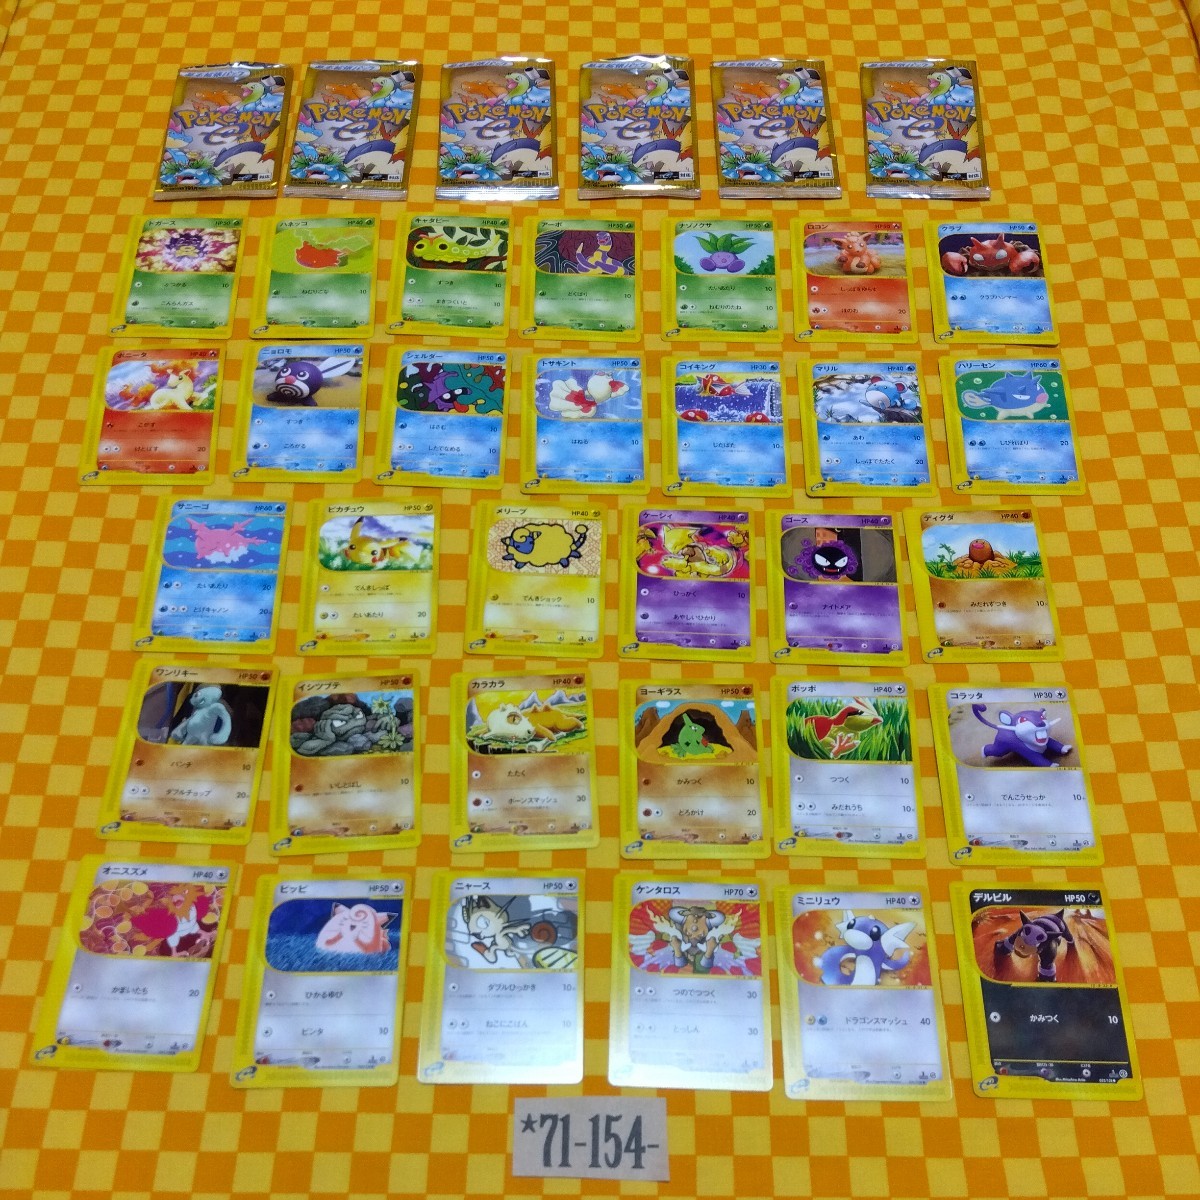 ★71-154- ポケモンカード e 001 ～ 032 / 128 ポケモン カード ３２枚 空袋６枚 基本拡張パック 第一弾 第１弾 Pokemon 1 edition